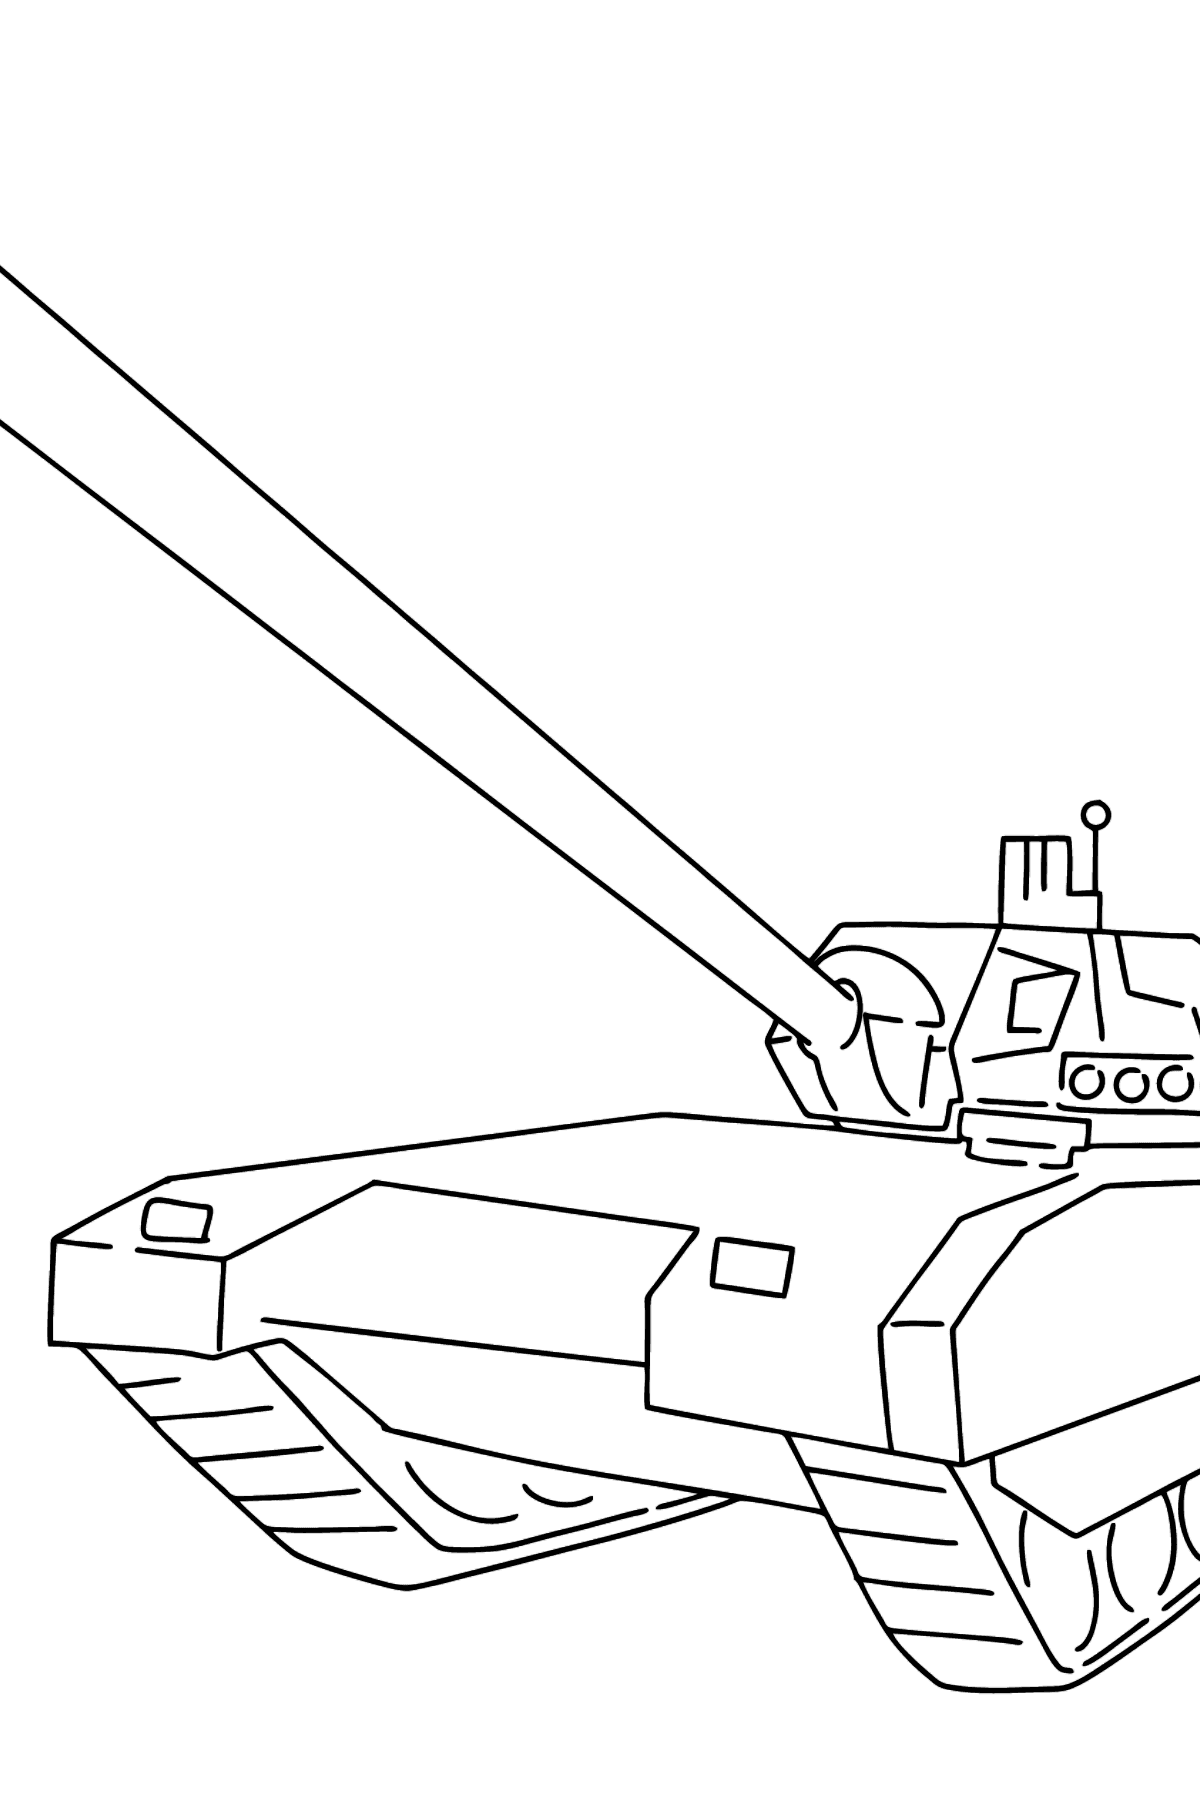 Desenho para colorir de tanque Armata - Imagens para Colorir para Crianças